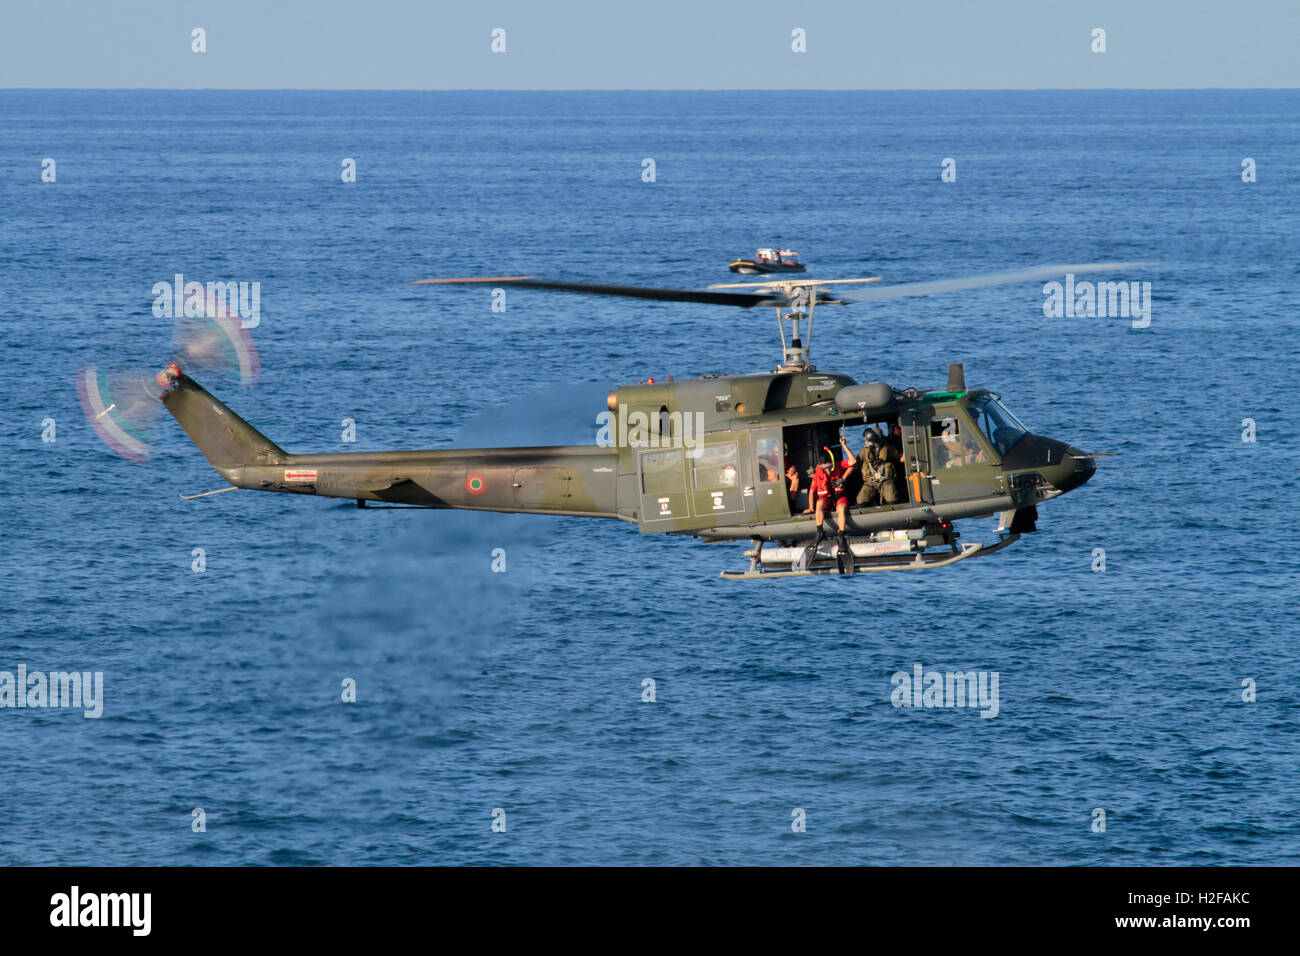 Hubschrauber schwebt. Taucher Vorbereitung auf Sprung von einer italienischen Luftwaffe oder Aeronautica Militare Italiana Agusta-Bell AB212 während einer Rettungssimulation Stockfoto